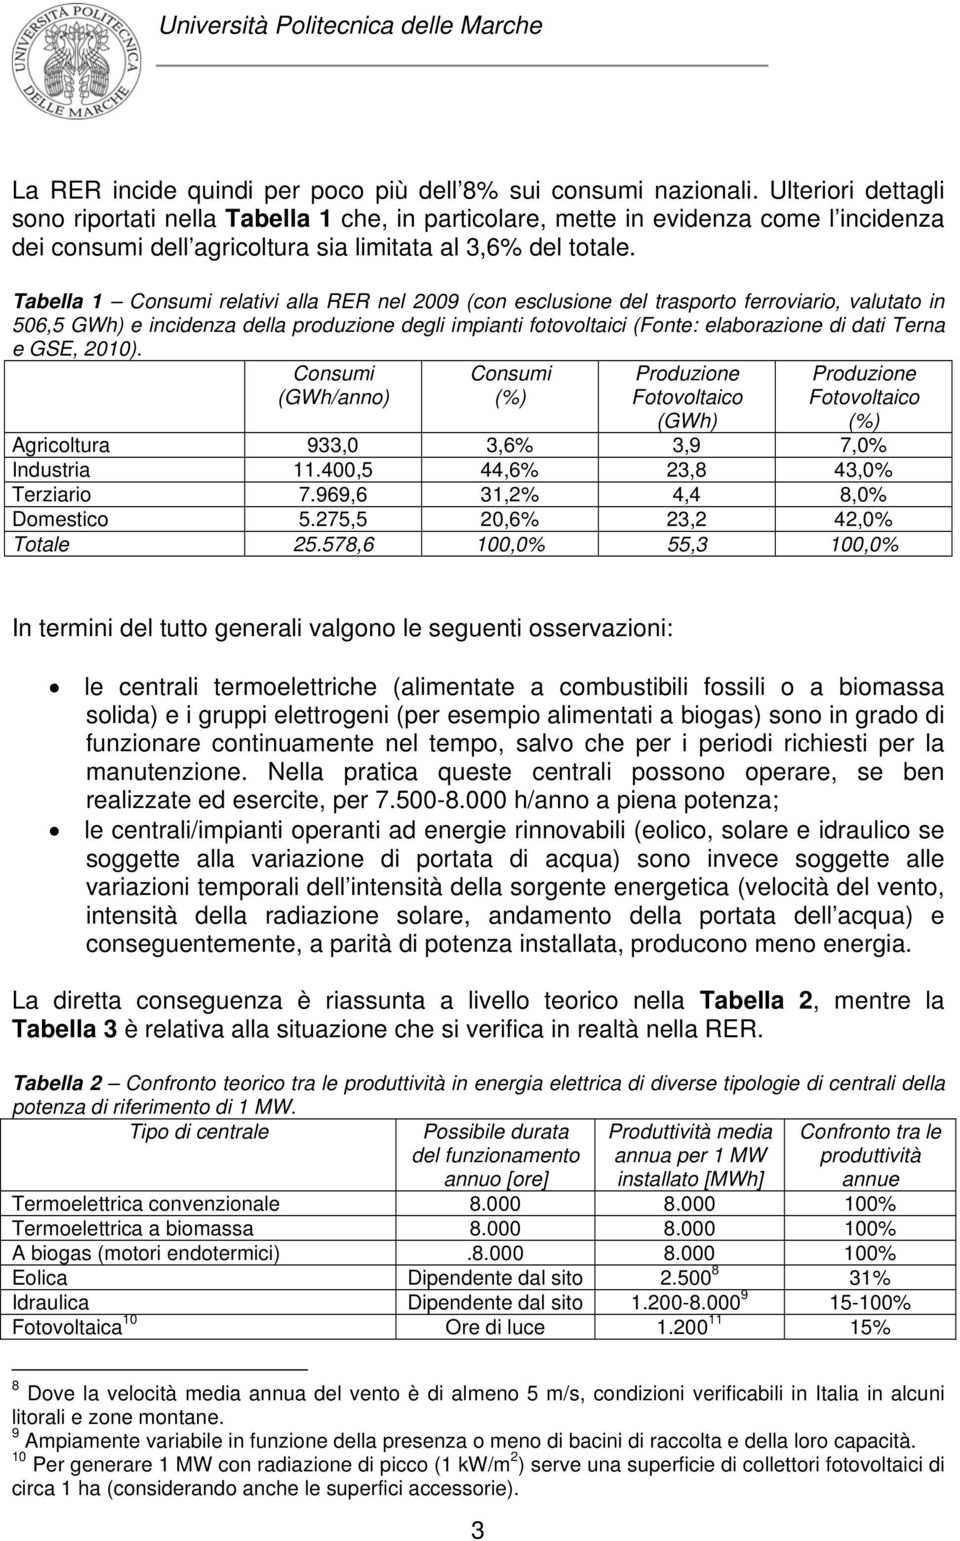 Tabella 1 Consumi relativi alla RER nel 2009 (con esclusione del trasporto ferroviario, valutato in 506,5 GWh) e incidenza della produzione degli impianti fotovoltaici (Fonte: elaborazione di dati